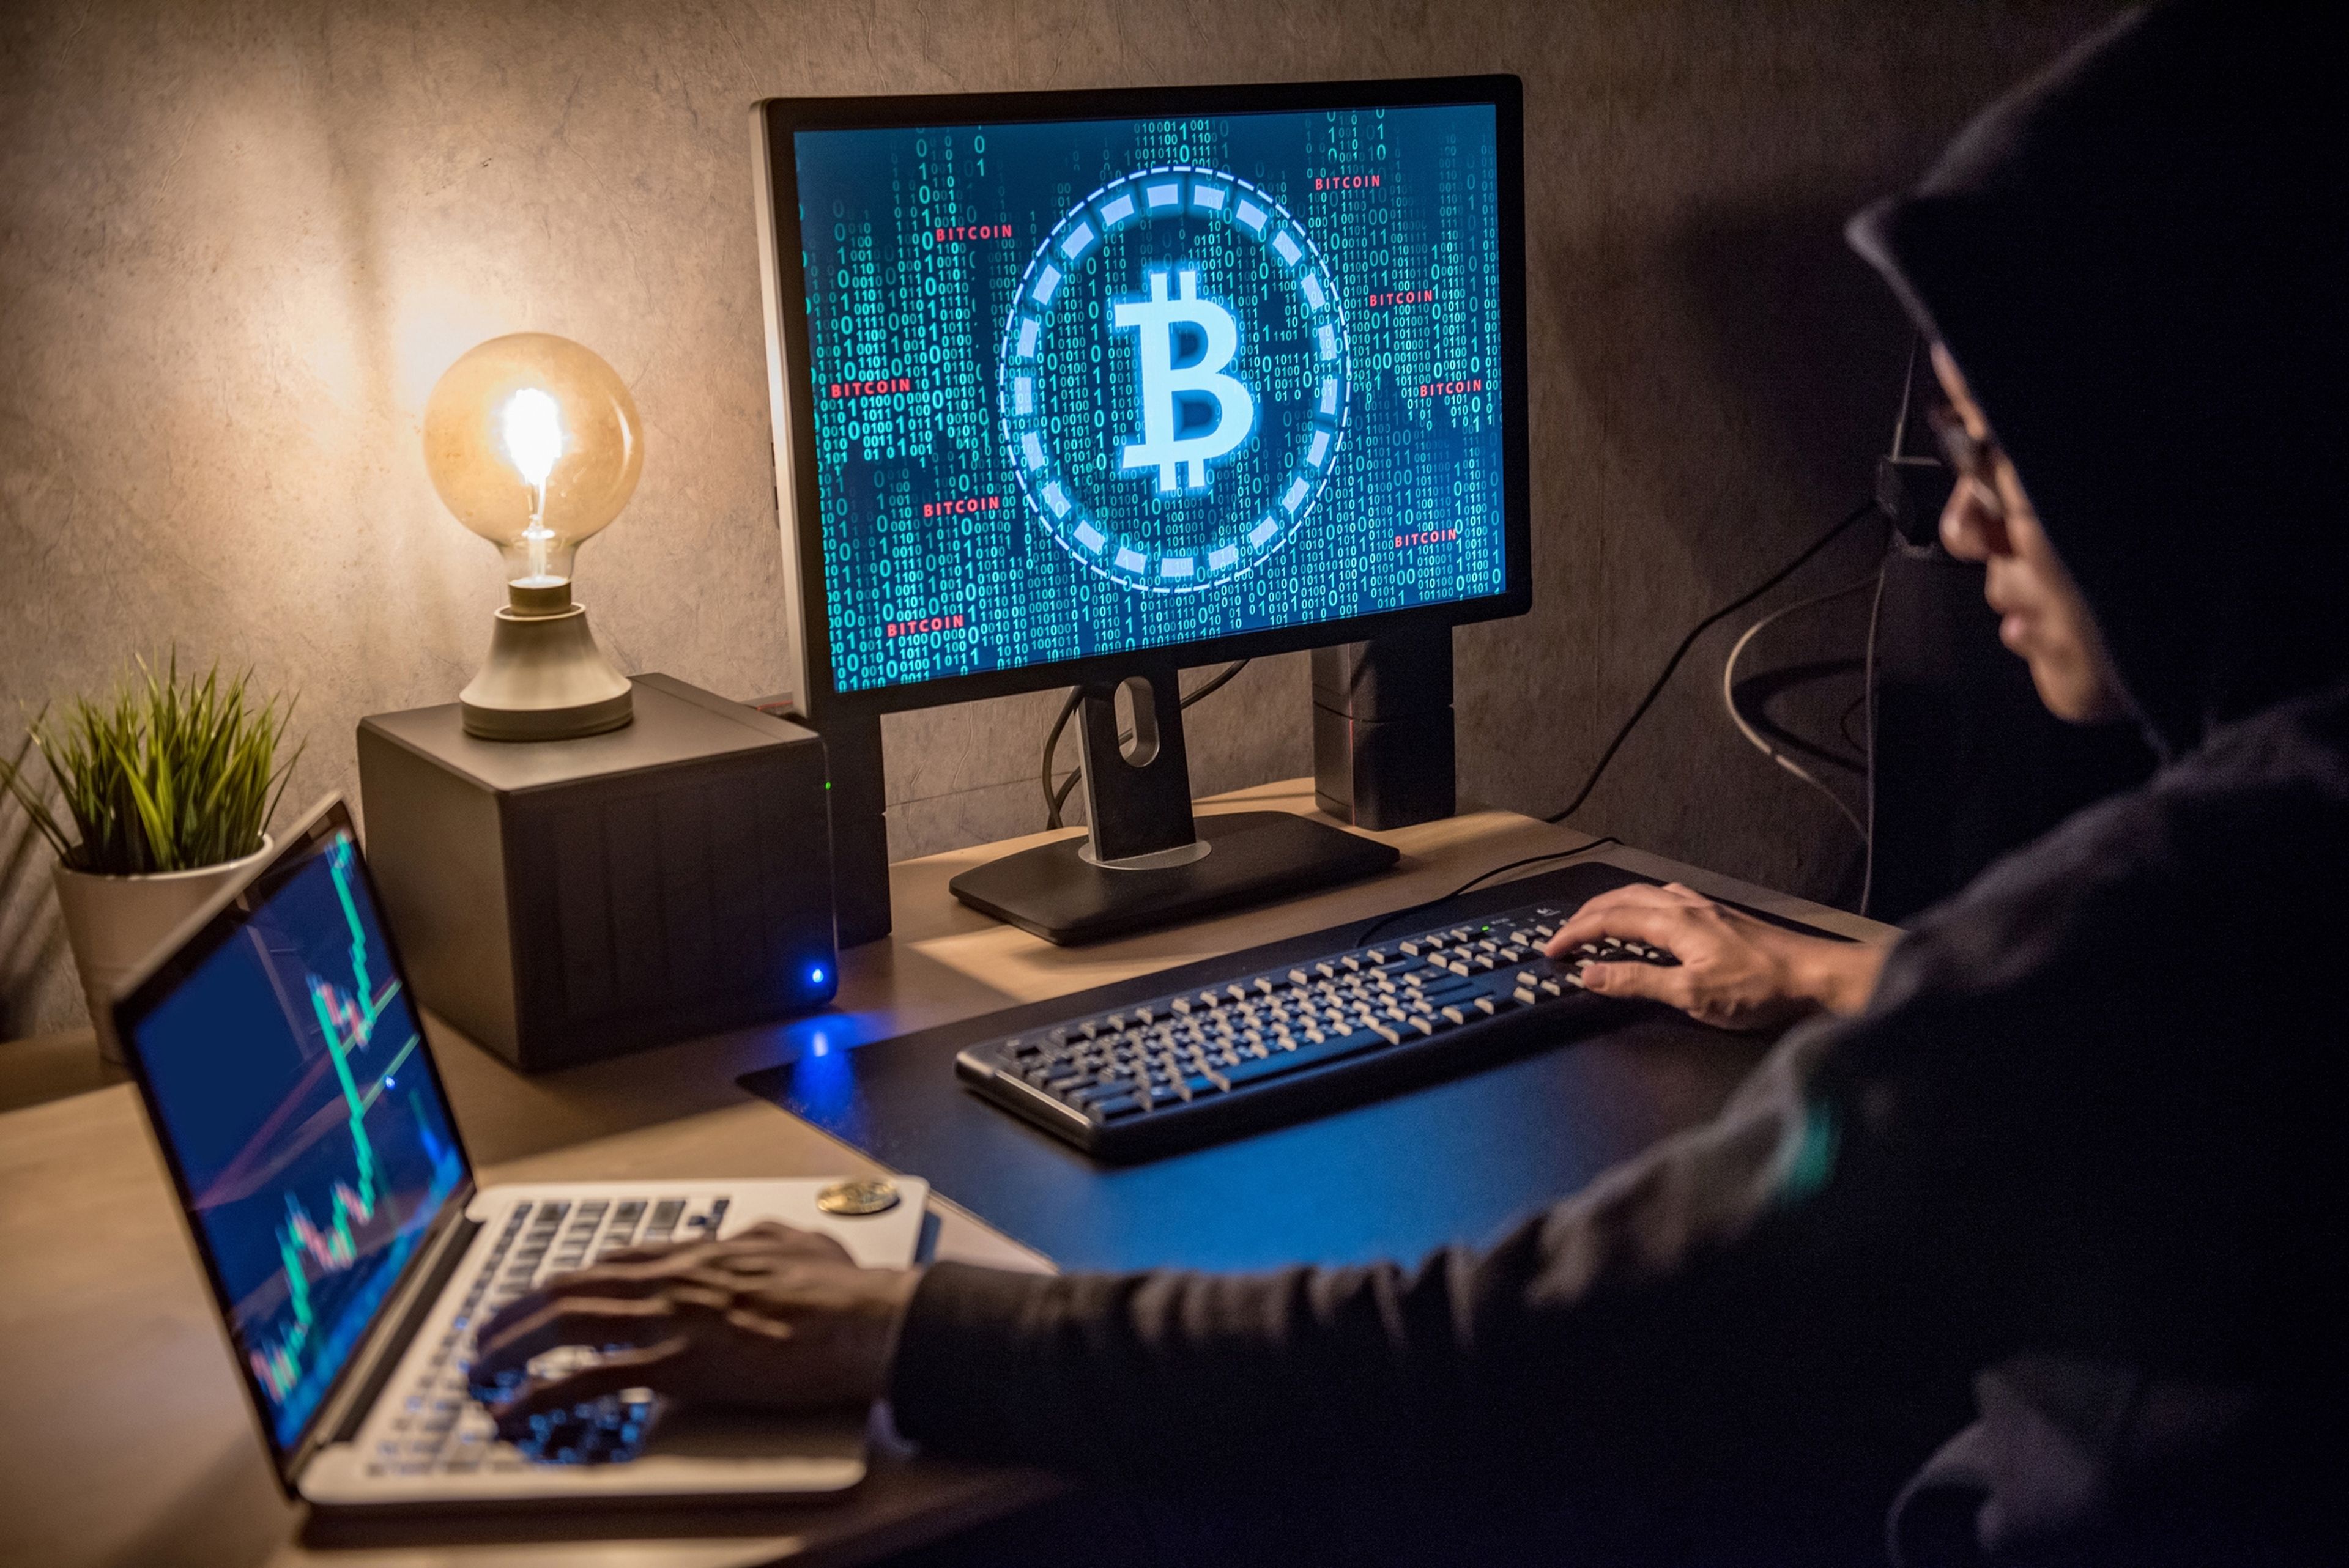 El hacker que robó 600 millones en criptomonedas lo hizo 'por diversión', cobra una recompensa por devolverlas